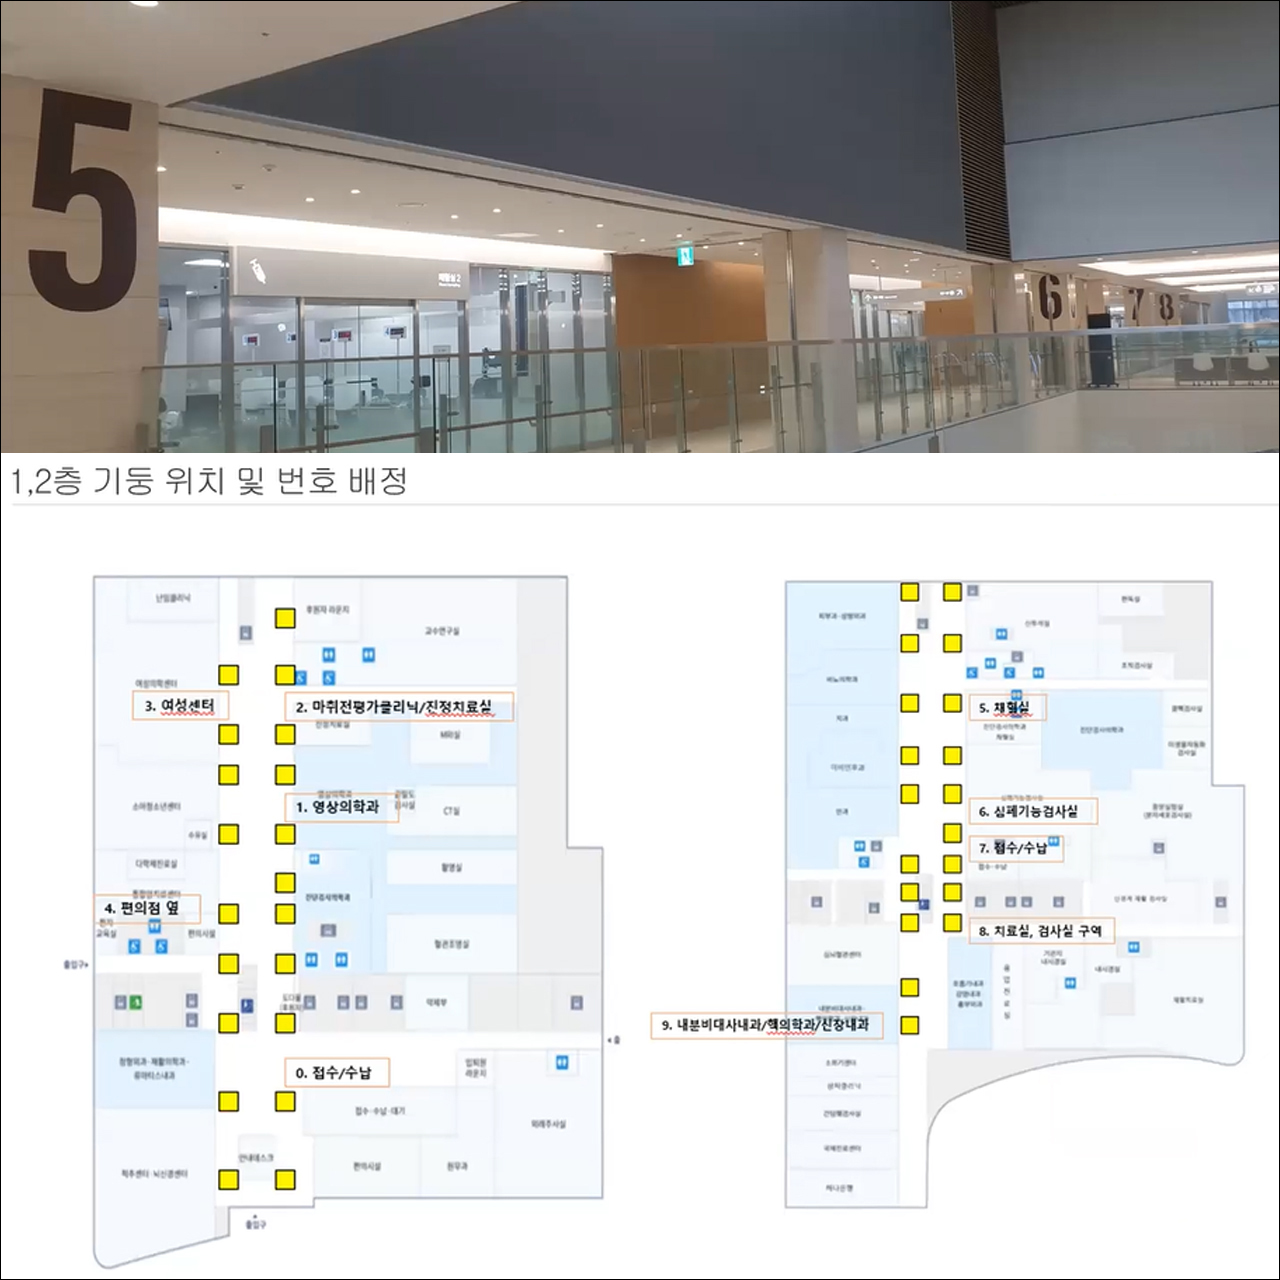 세종충남대병원은 1,2층 기둥에 번호를 붙여 환자들이 쉽게 길을 찾을 수 있도록 했다(출처: 김현정 교수 발표자료).